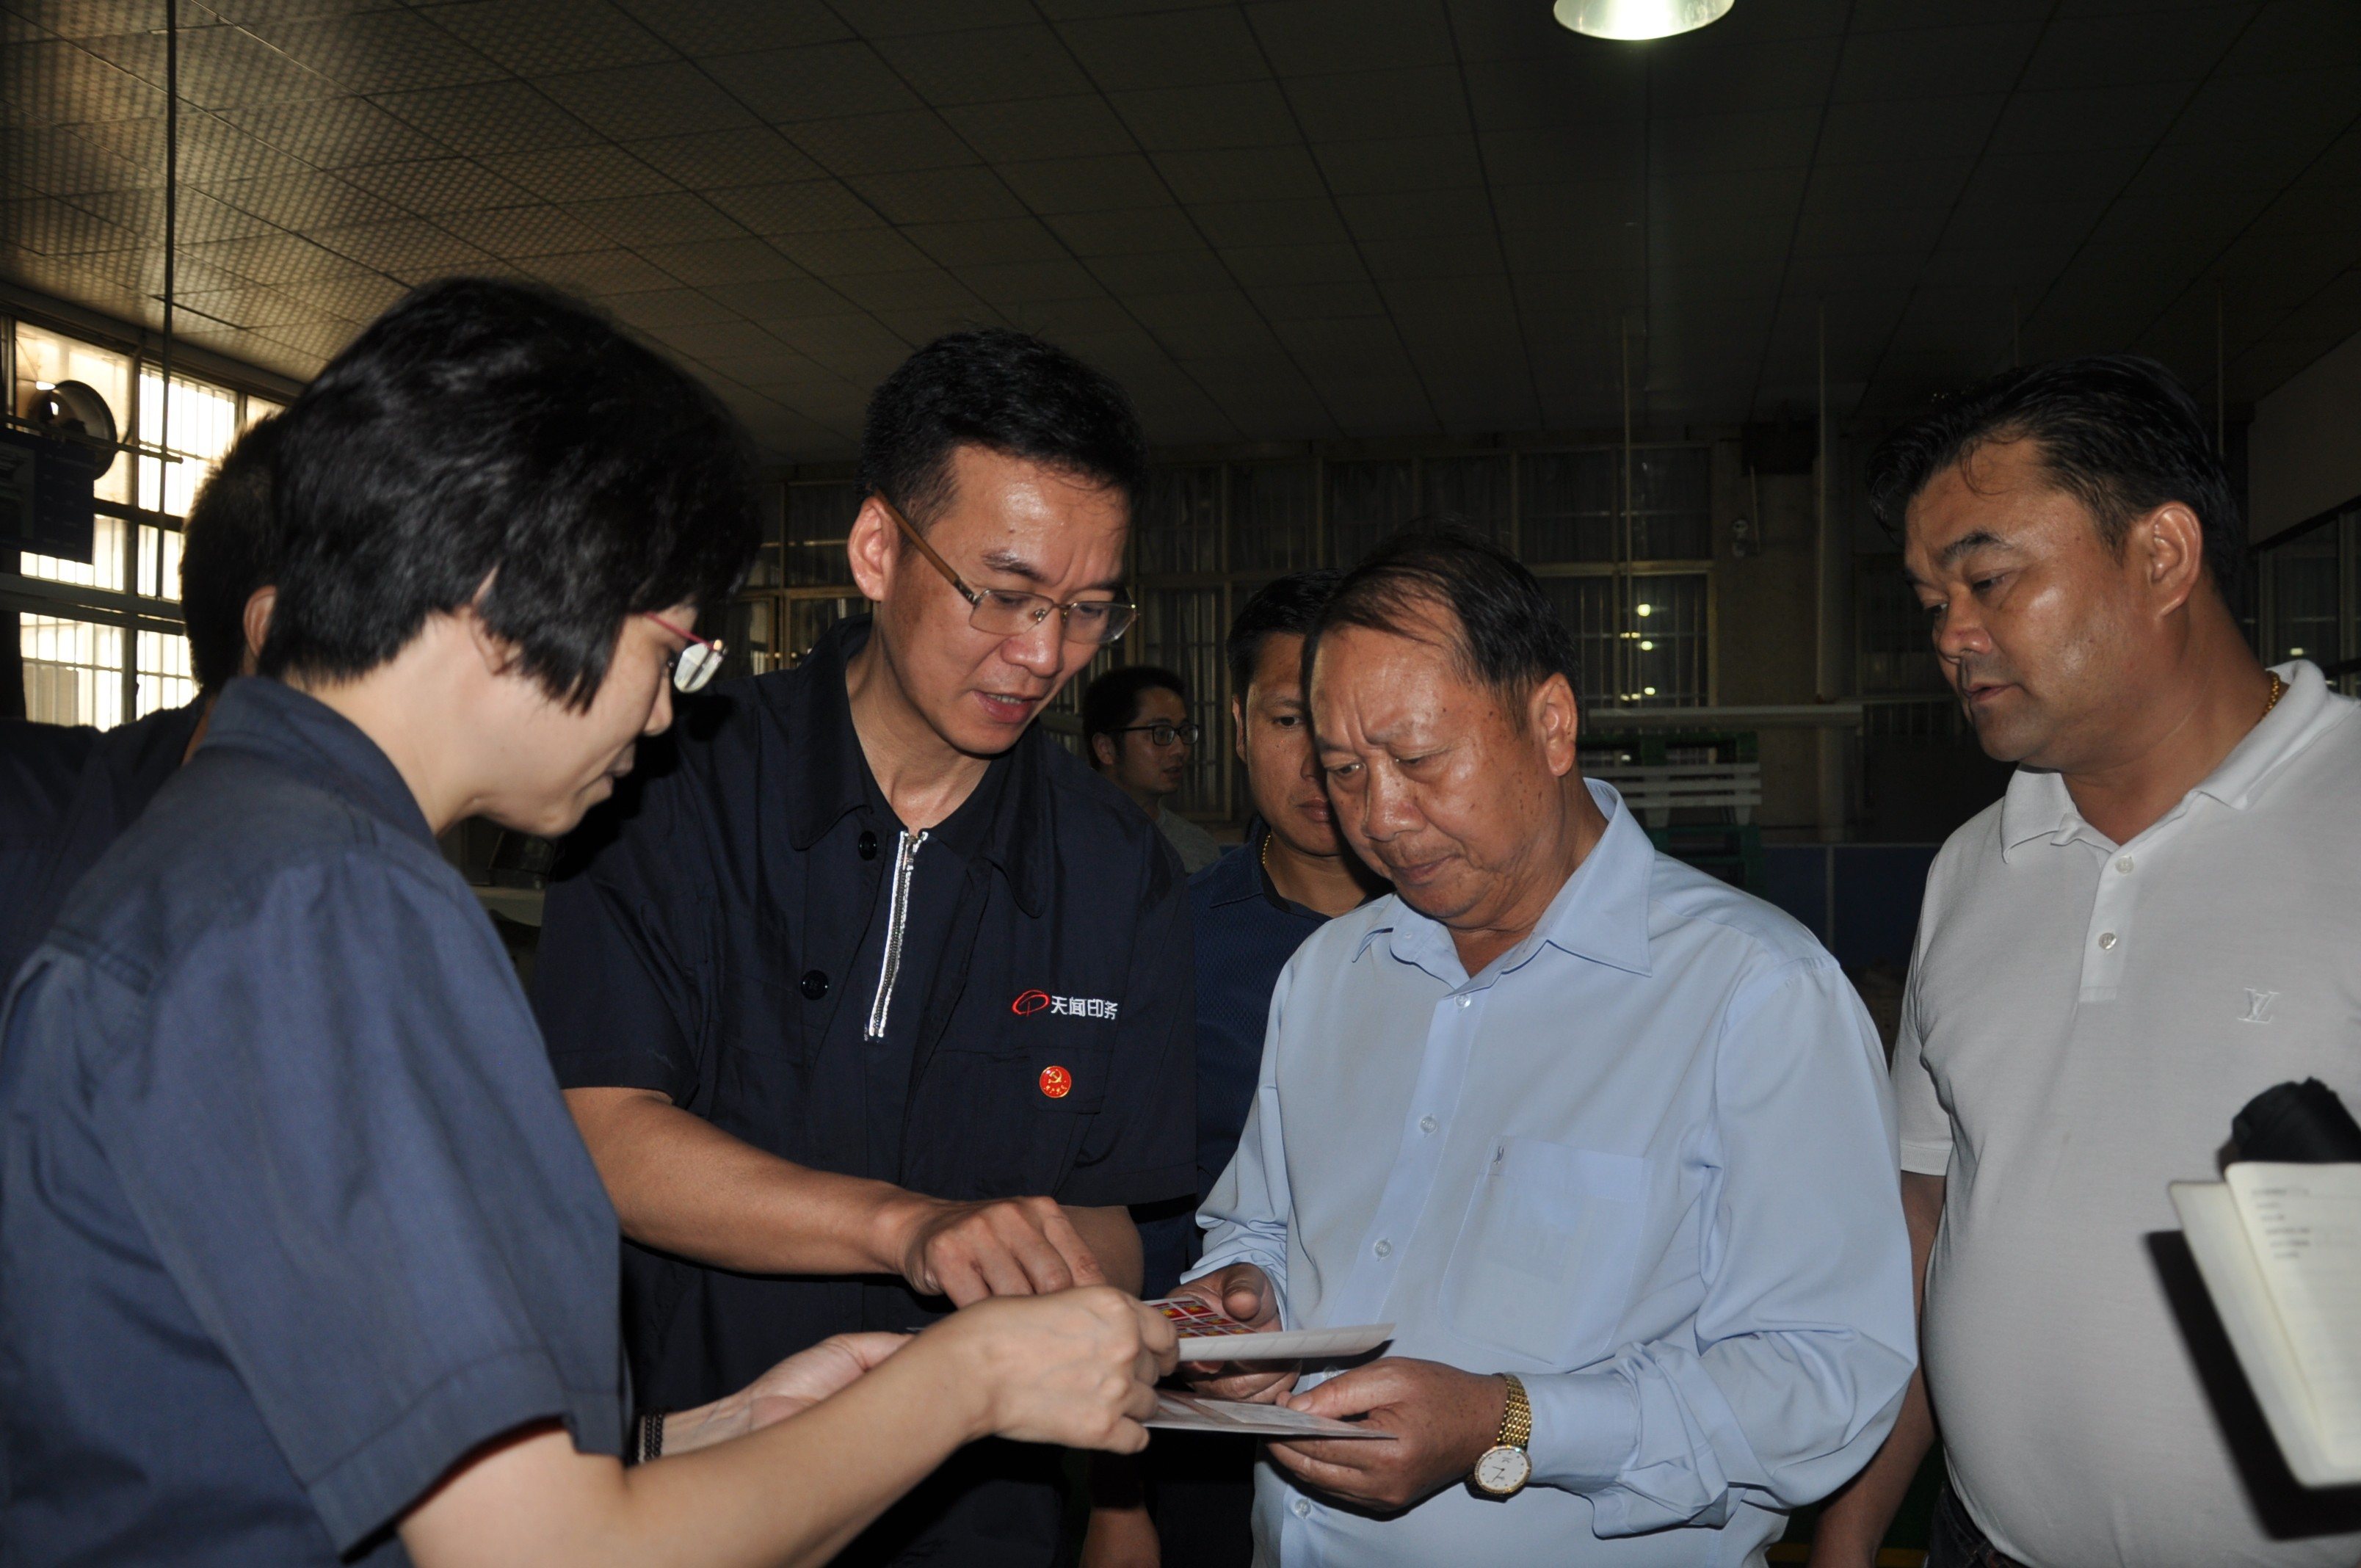 老挝中央宣传部一行来司参观访问